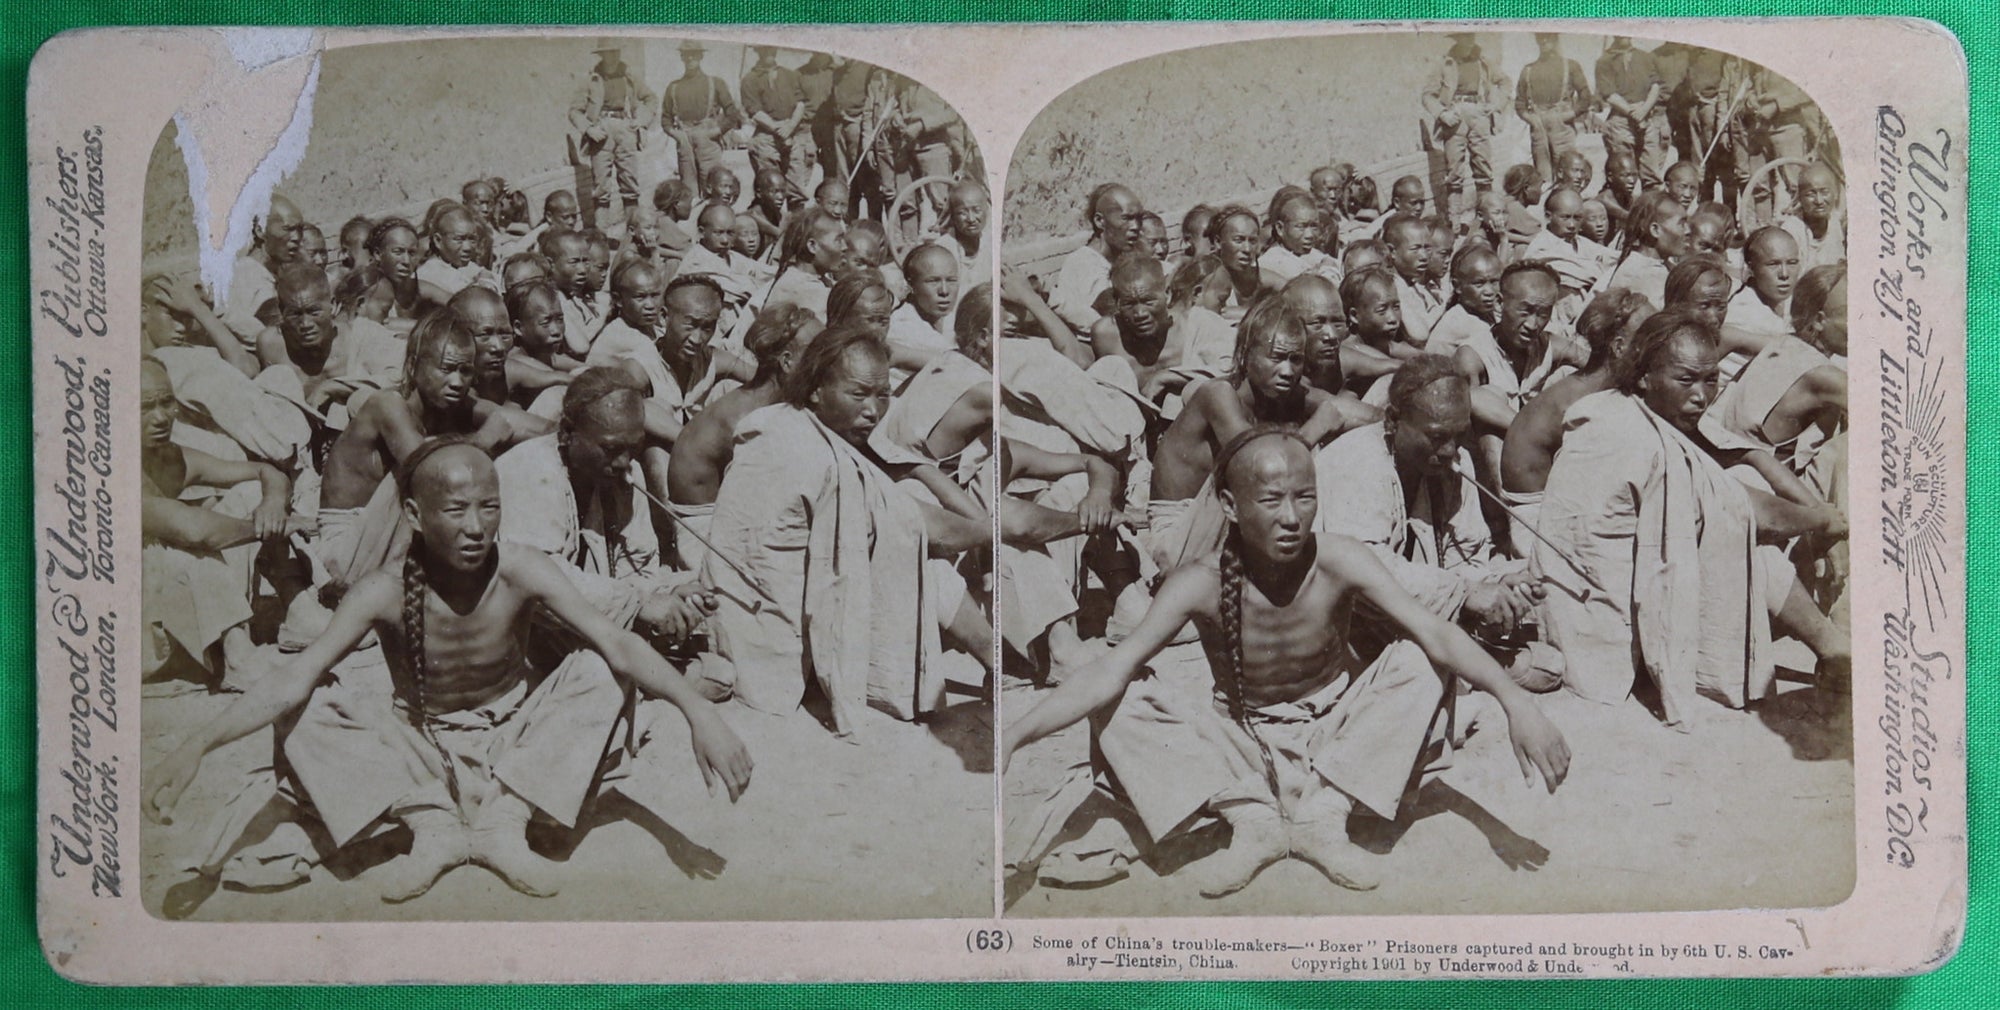 1901 stereoscopic photo – 6th US Cavalry prisoners Boxer Rebellion